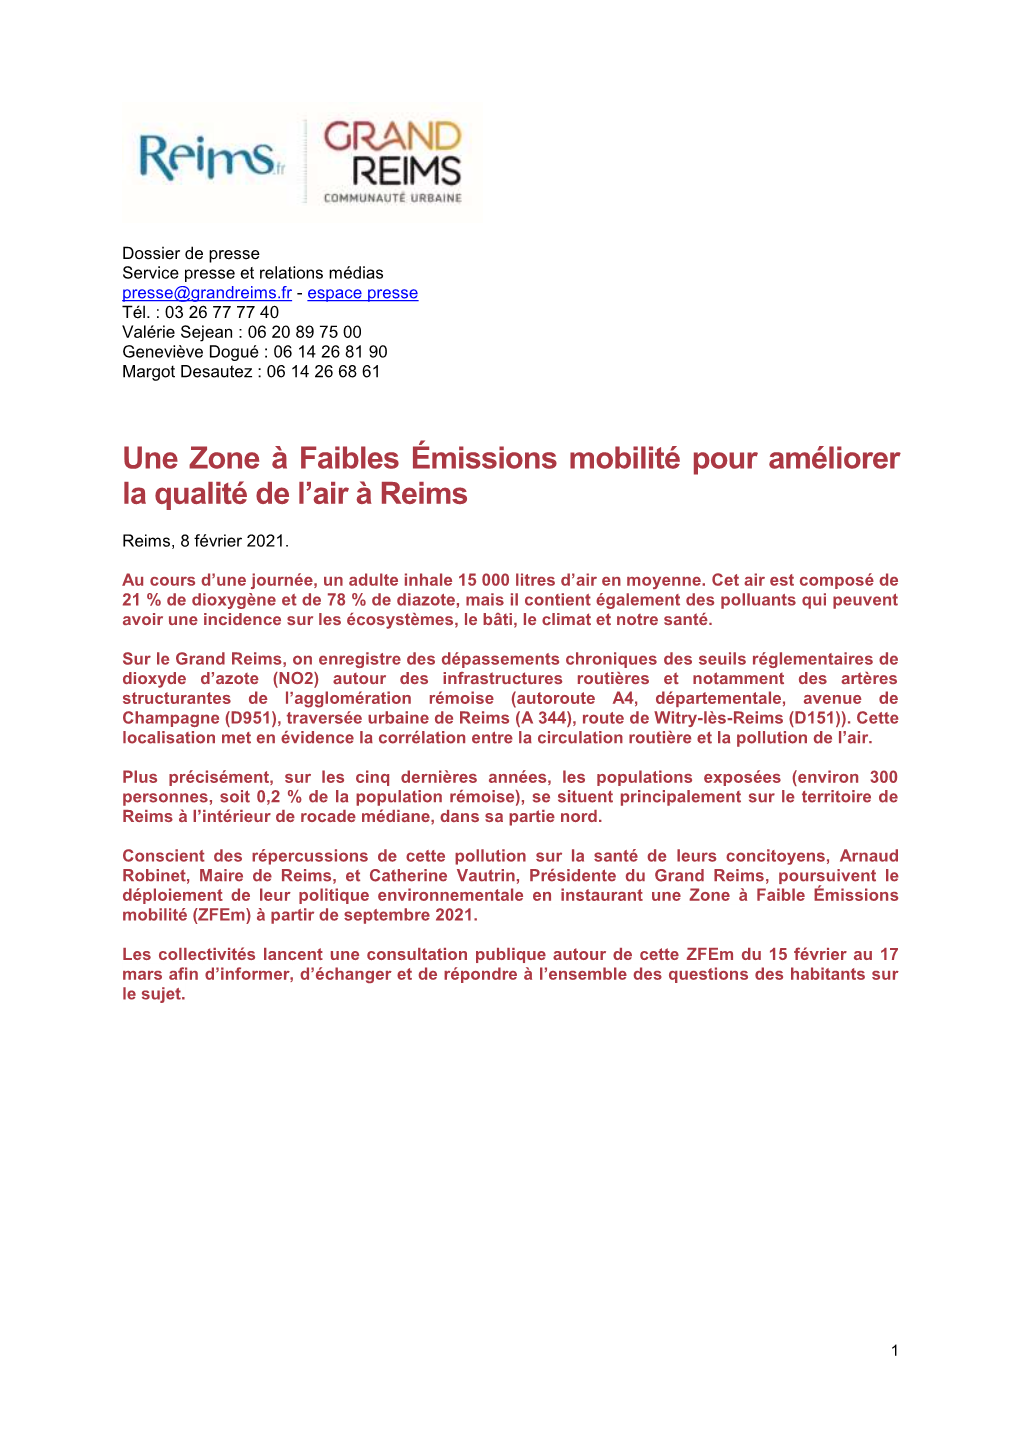 Une Zone À Faibles Émissions Mobilité Pour Améliorer La Qualité De L’Air À Reims